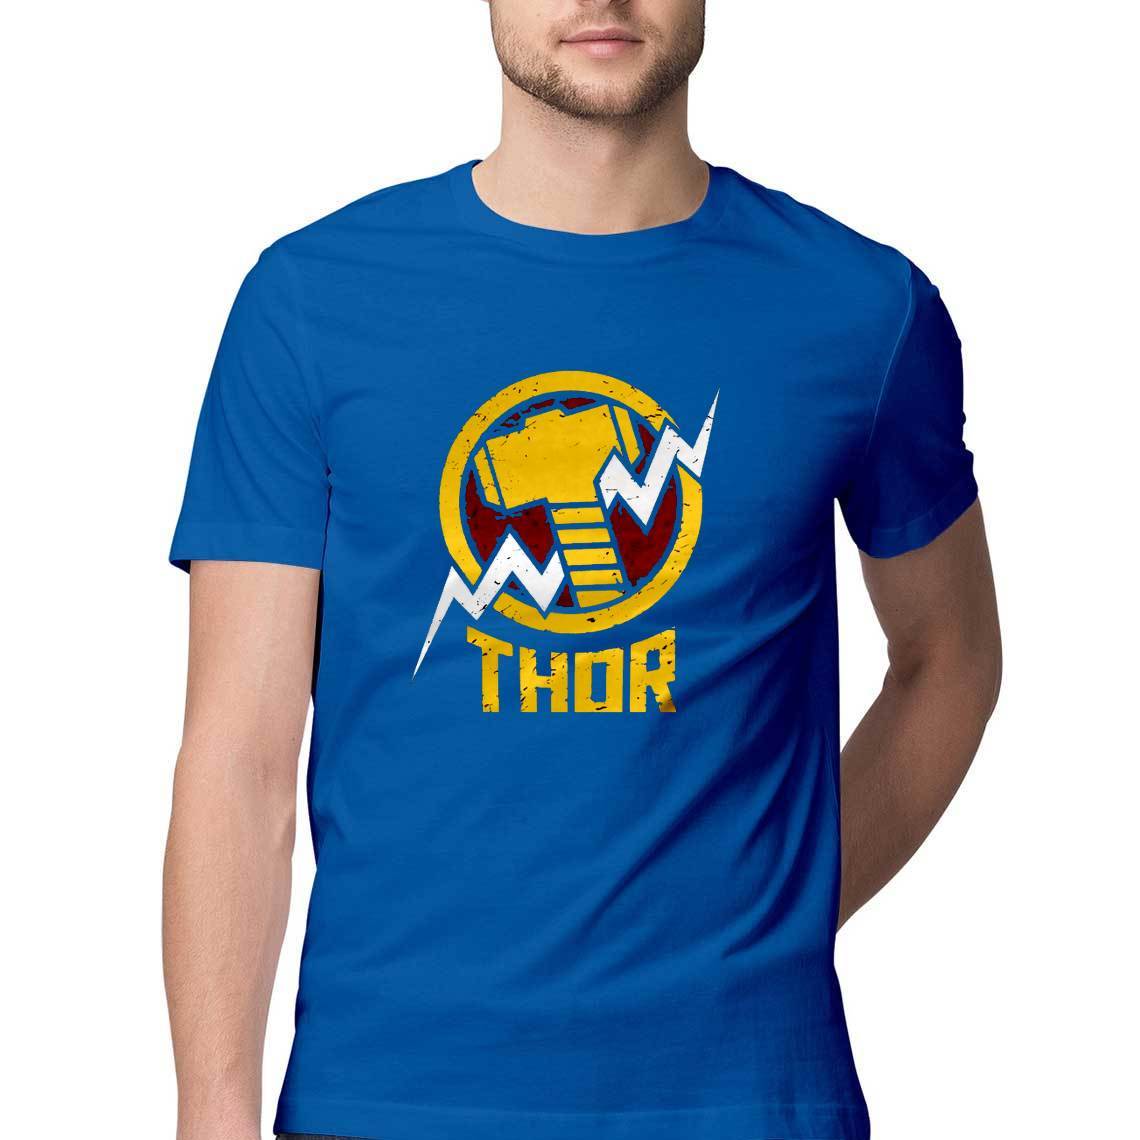 Thor Avengers Logo Tshirt - Insane Tees